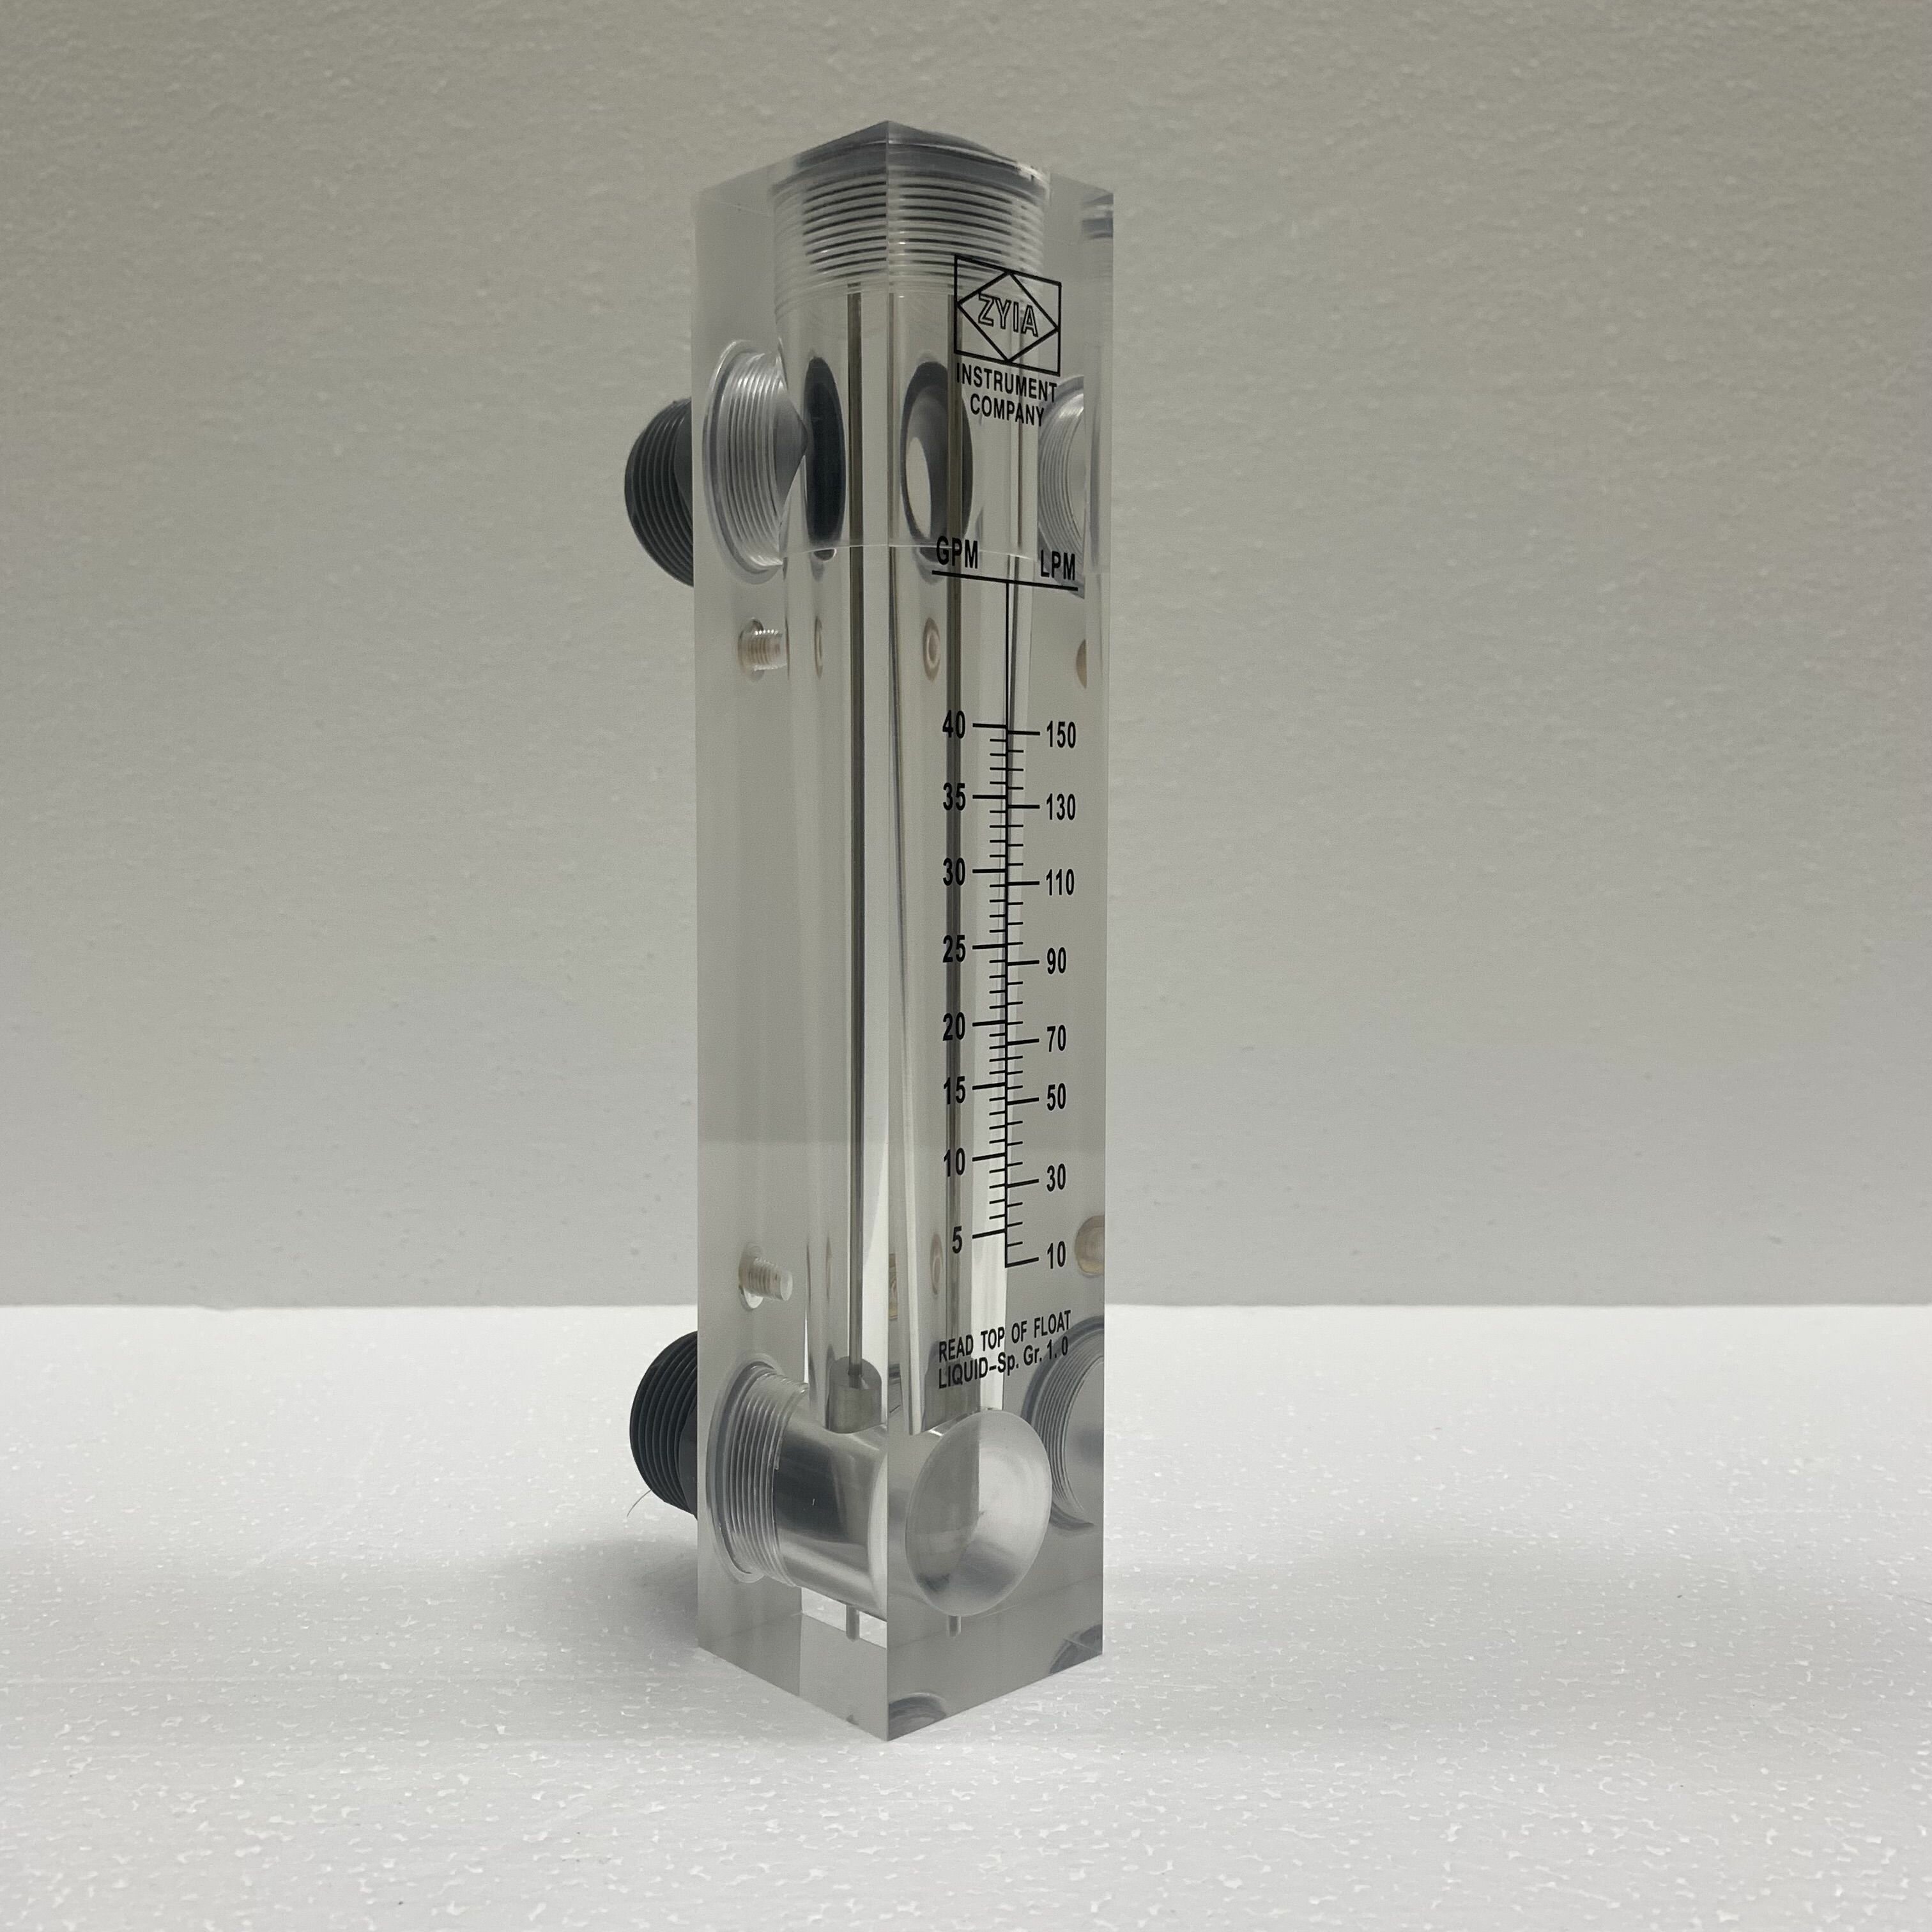 Ротаметр (расходомер) воды LZM-25Z, диапазон измерения 5-40 г/м и 10-150 л/м, акриловый корпус, фитинги ПВХ, без регулятора расхода - фотография № 6